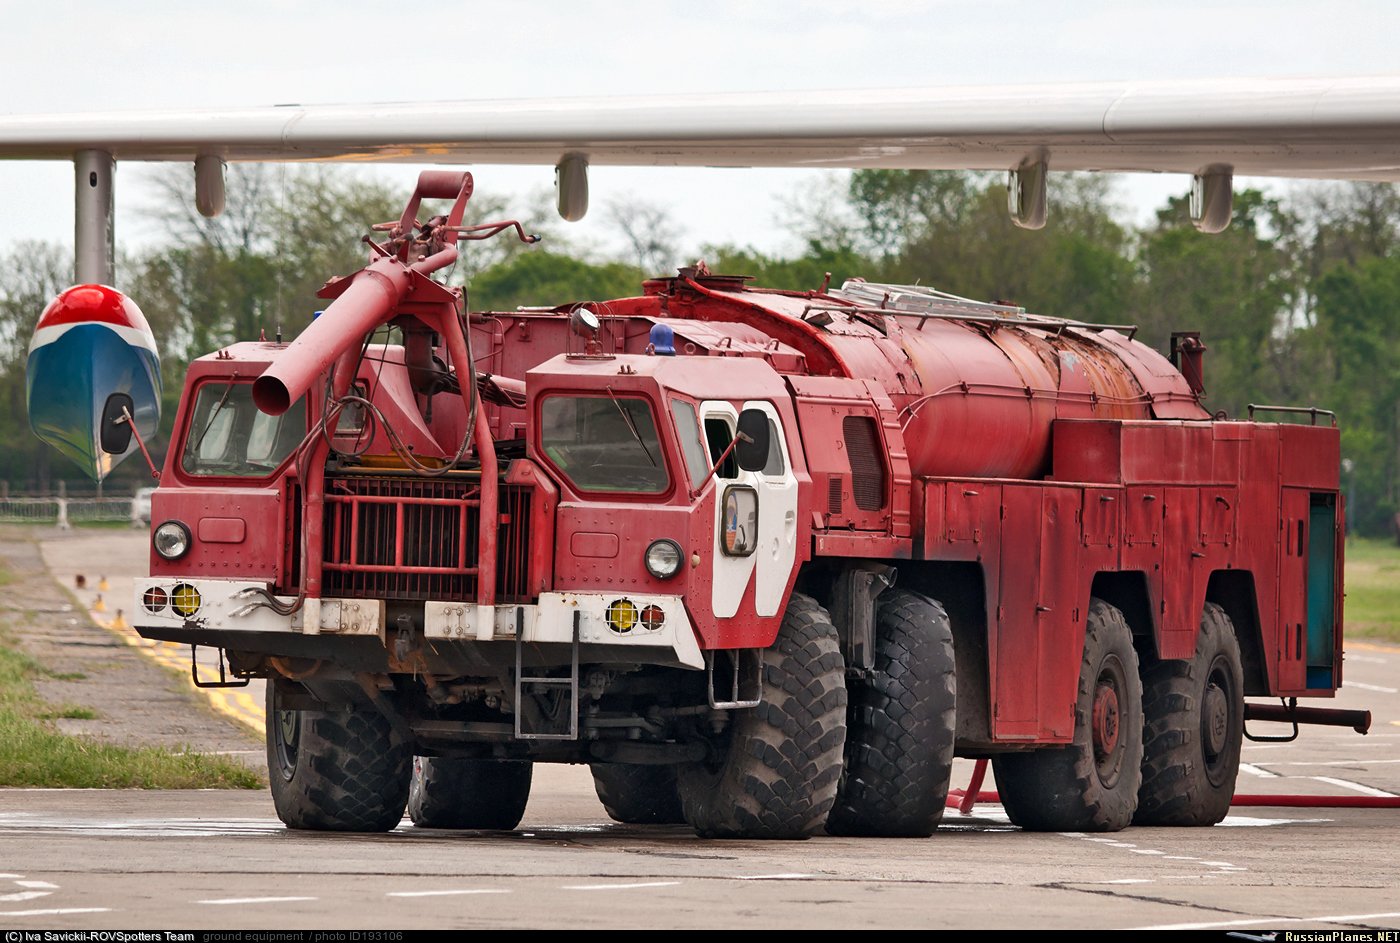 Пожарный автомобиль баз. МАЗ-7310 АА-60. МАЗ 7310 ураган. АА-60 (МАЗ 7313). МАЗ-543/МАЗ-7310.